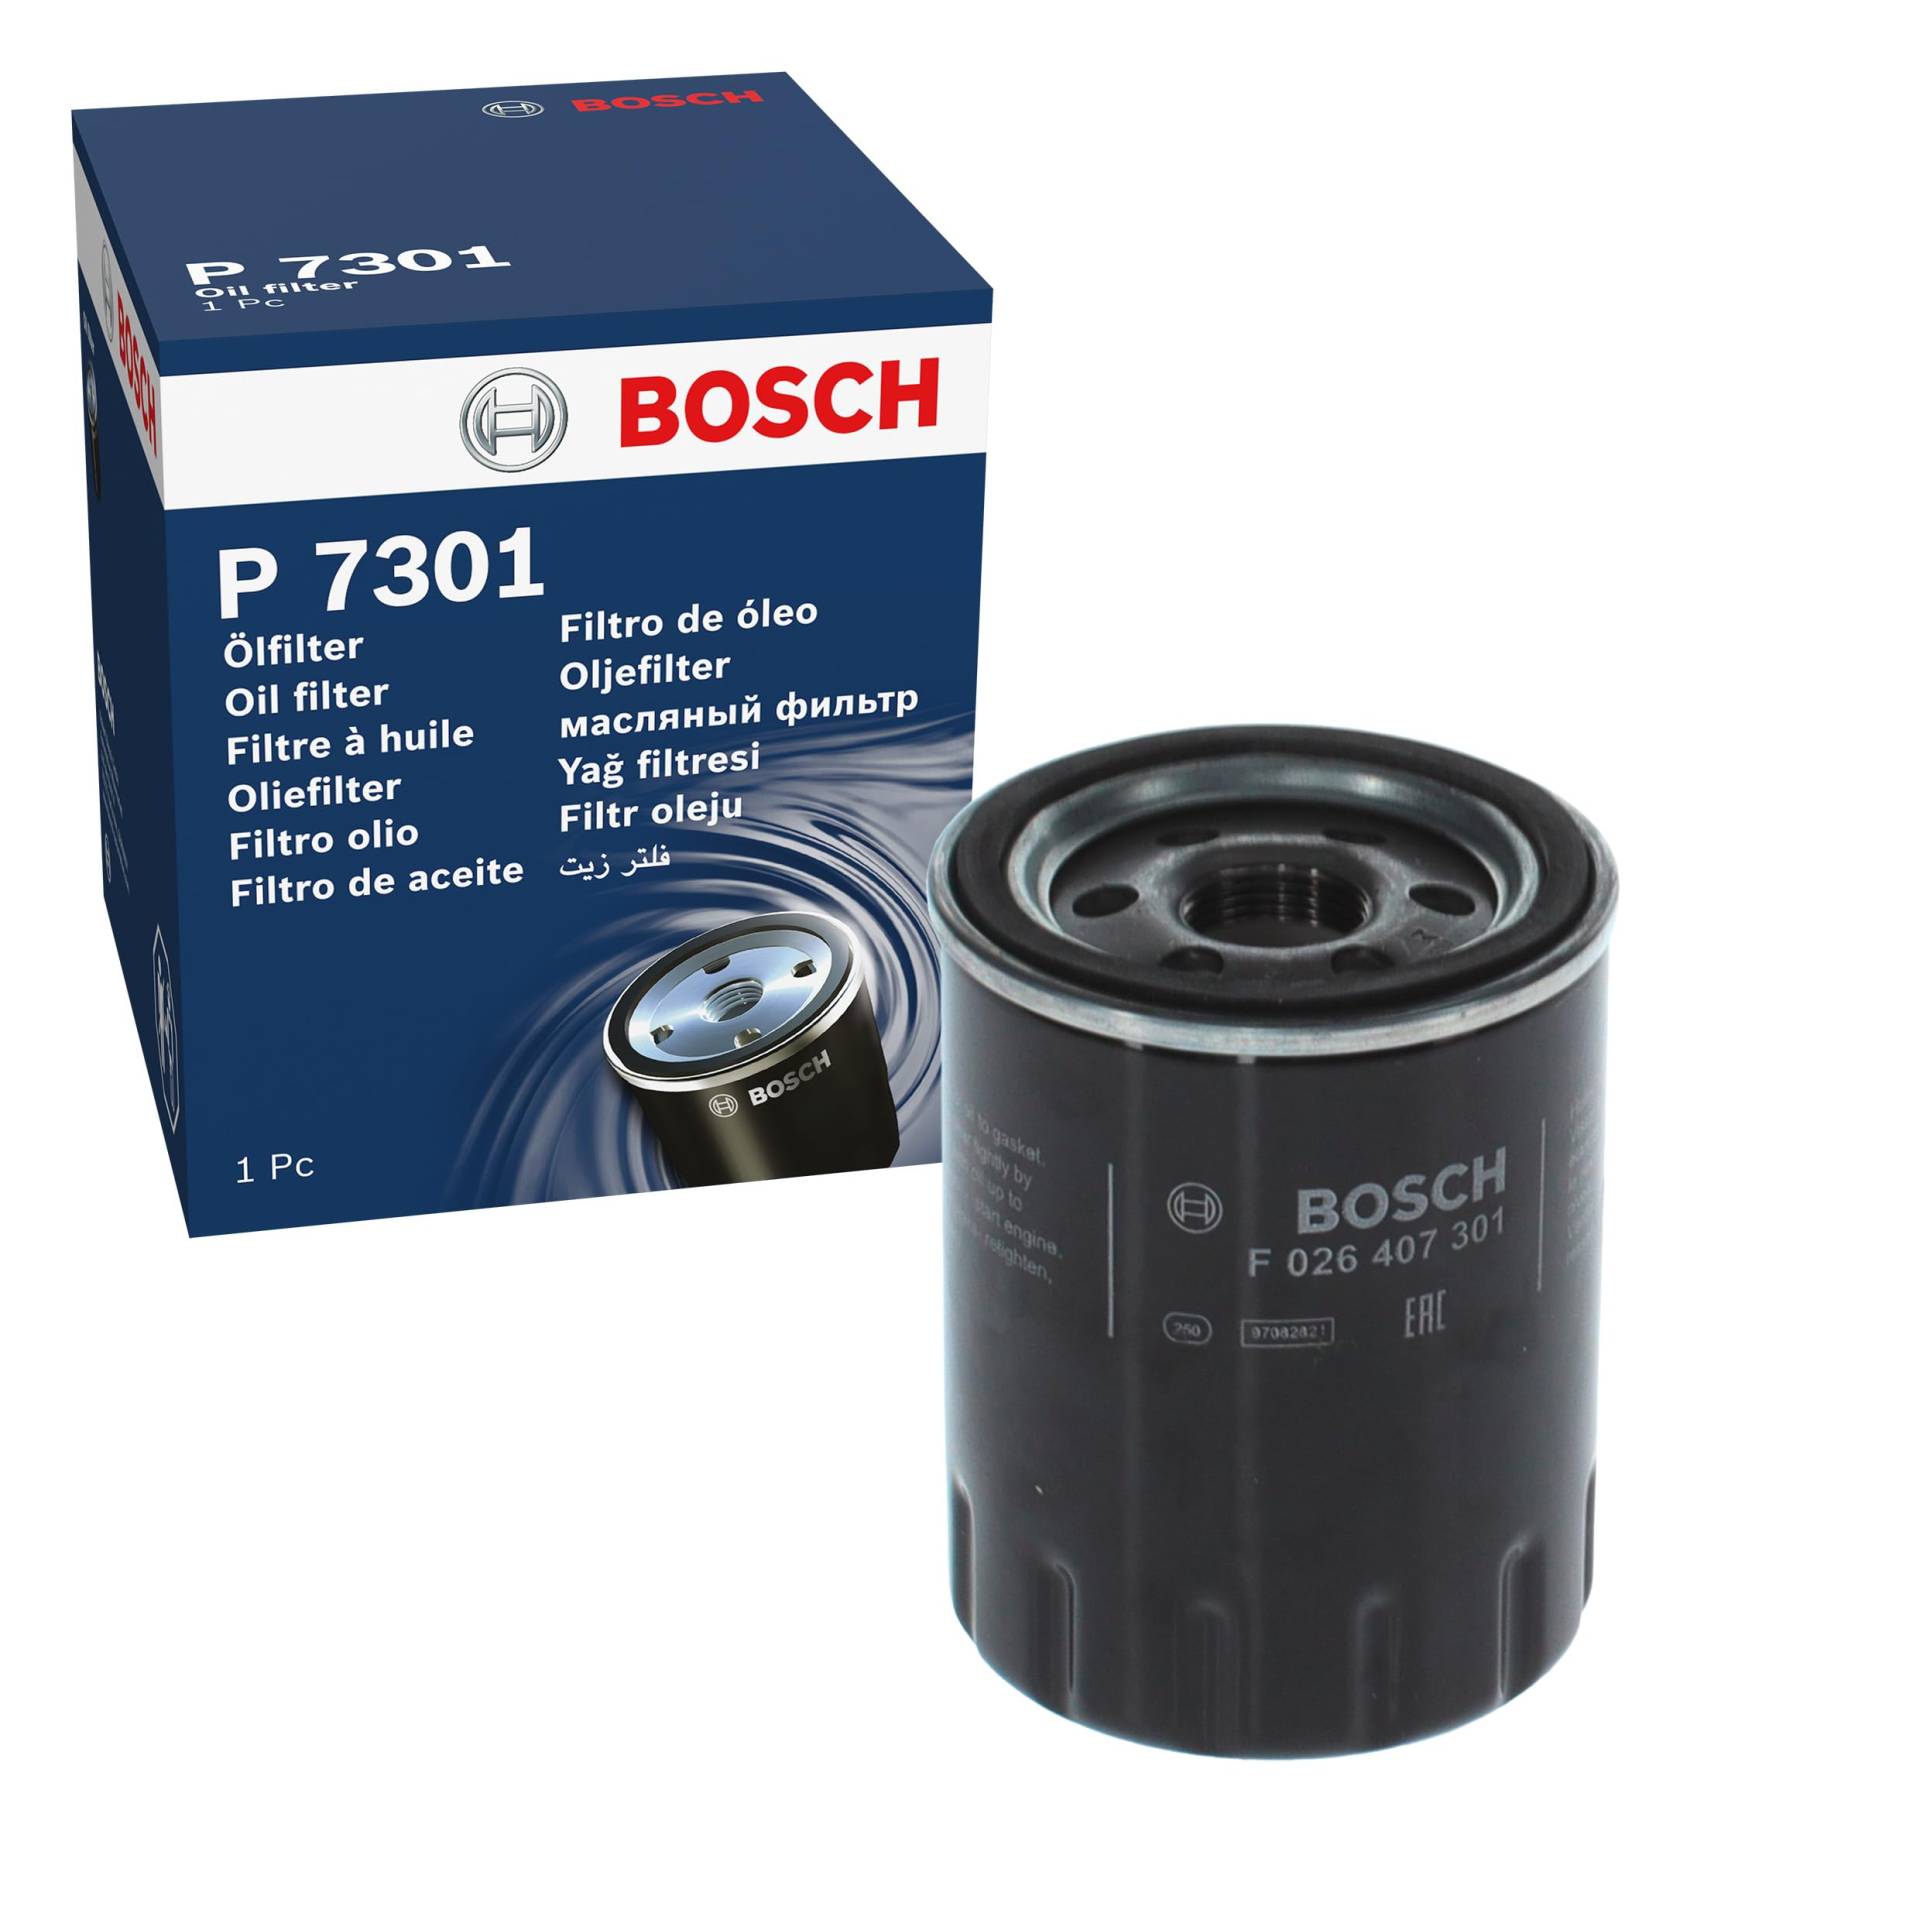 Bosch P7301 - Ölfilter Auto von Bosch Automotive